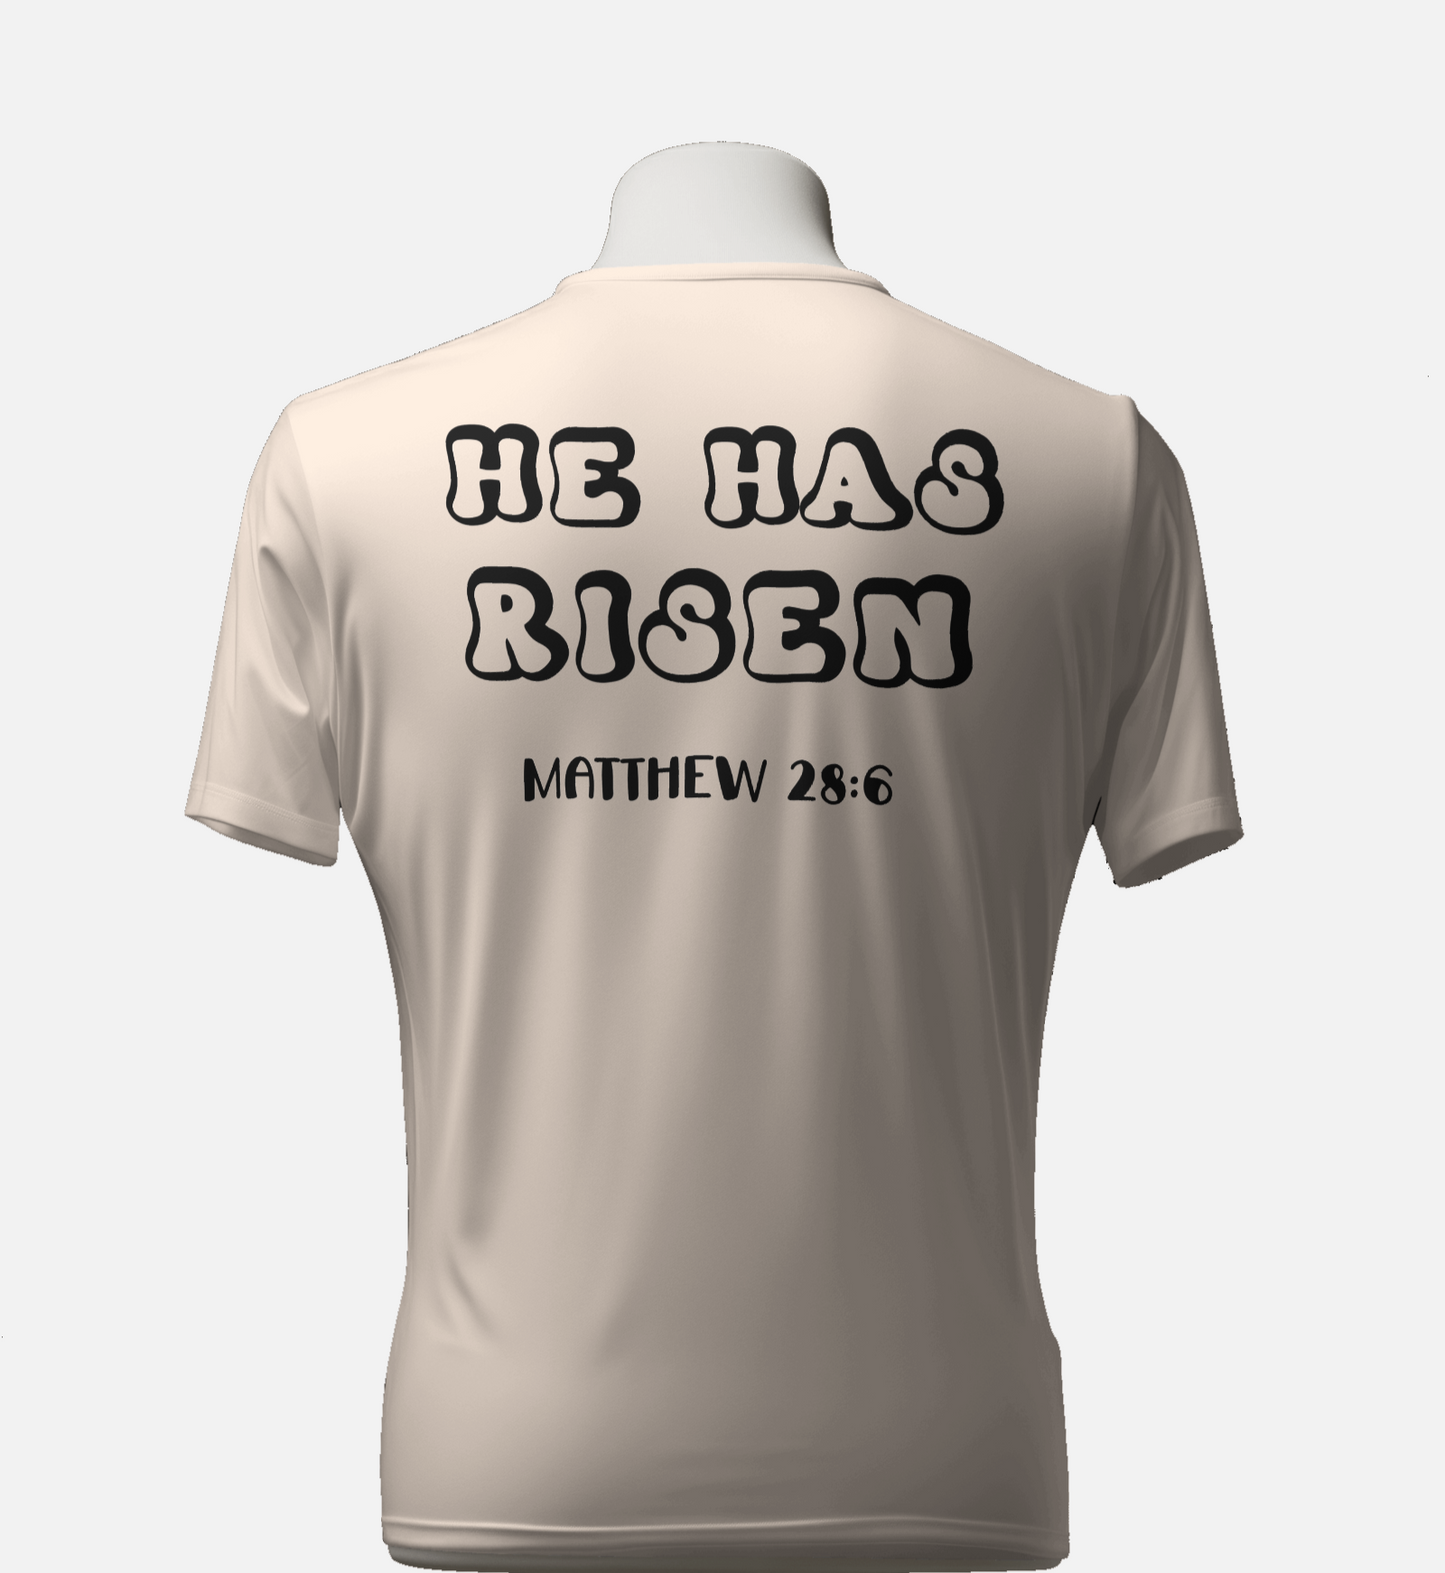 He Has Risen T-Shirt